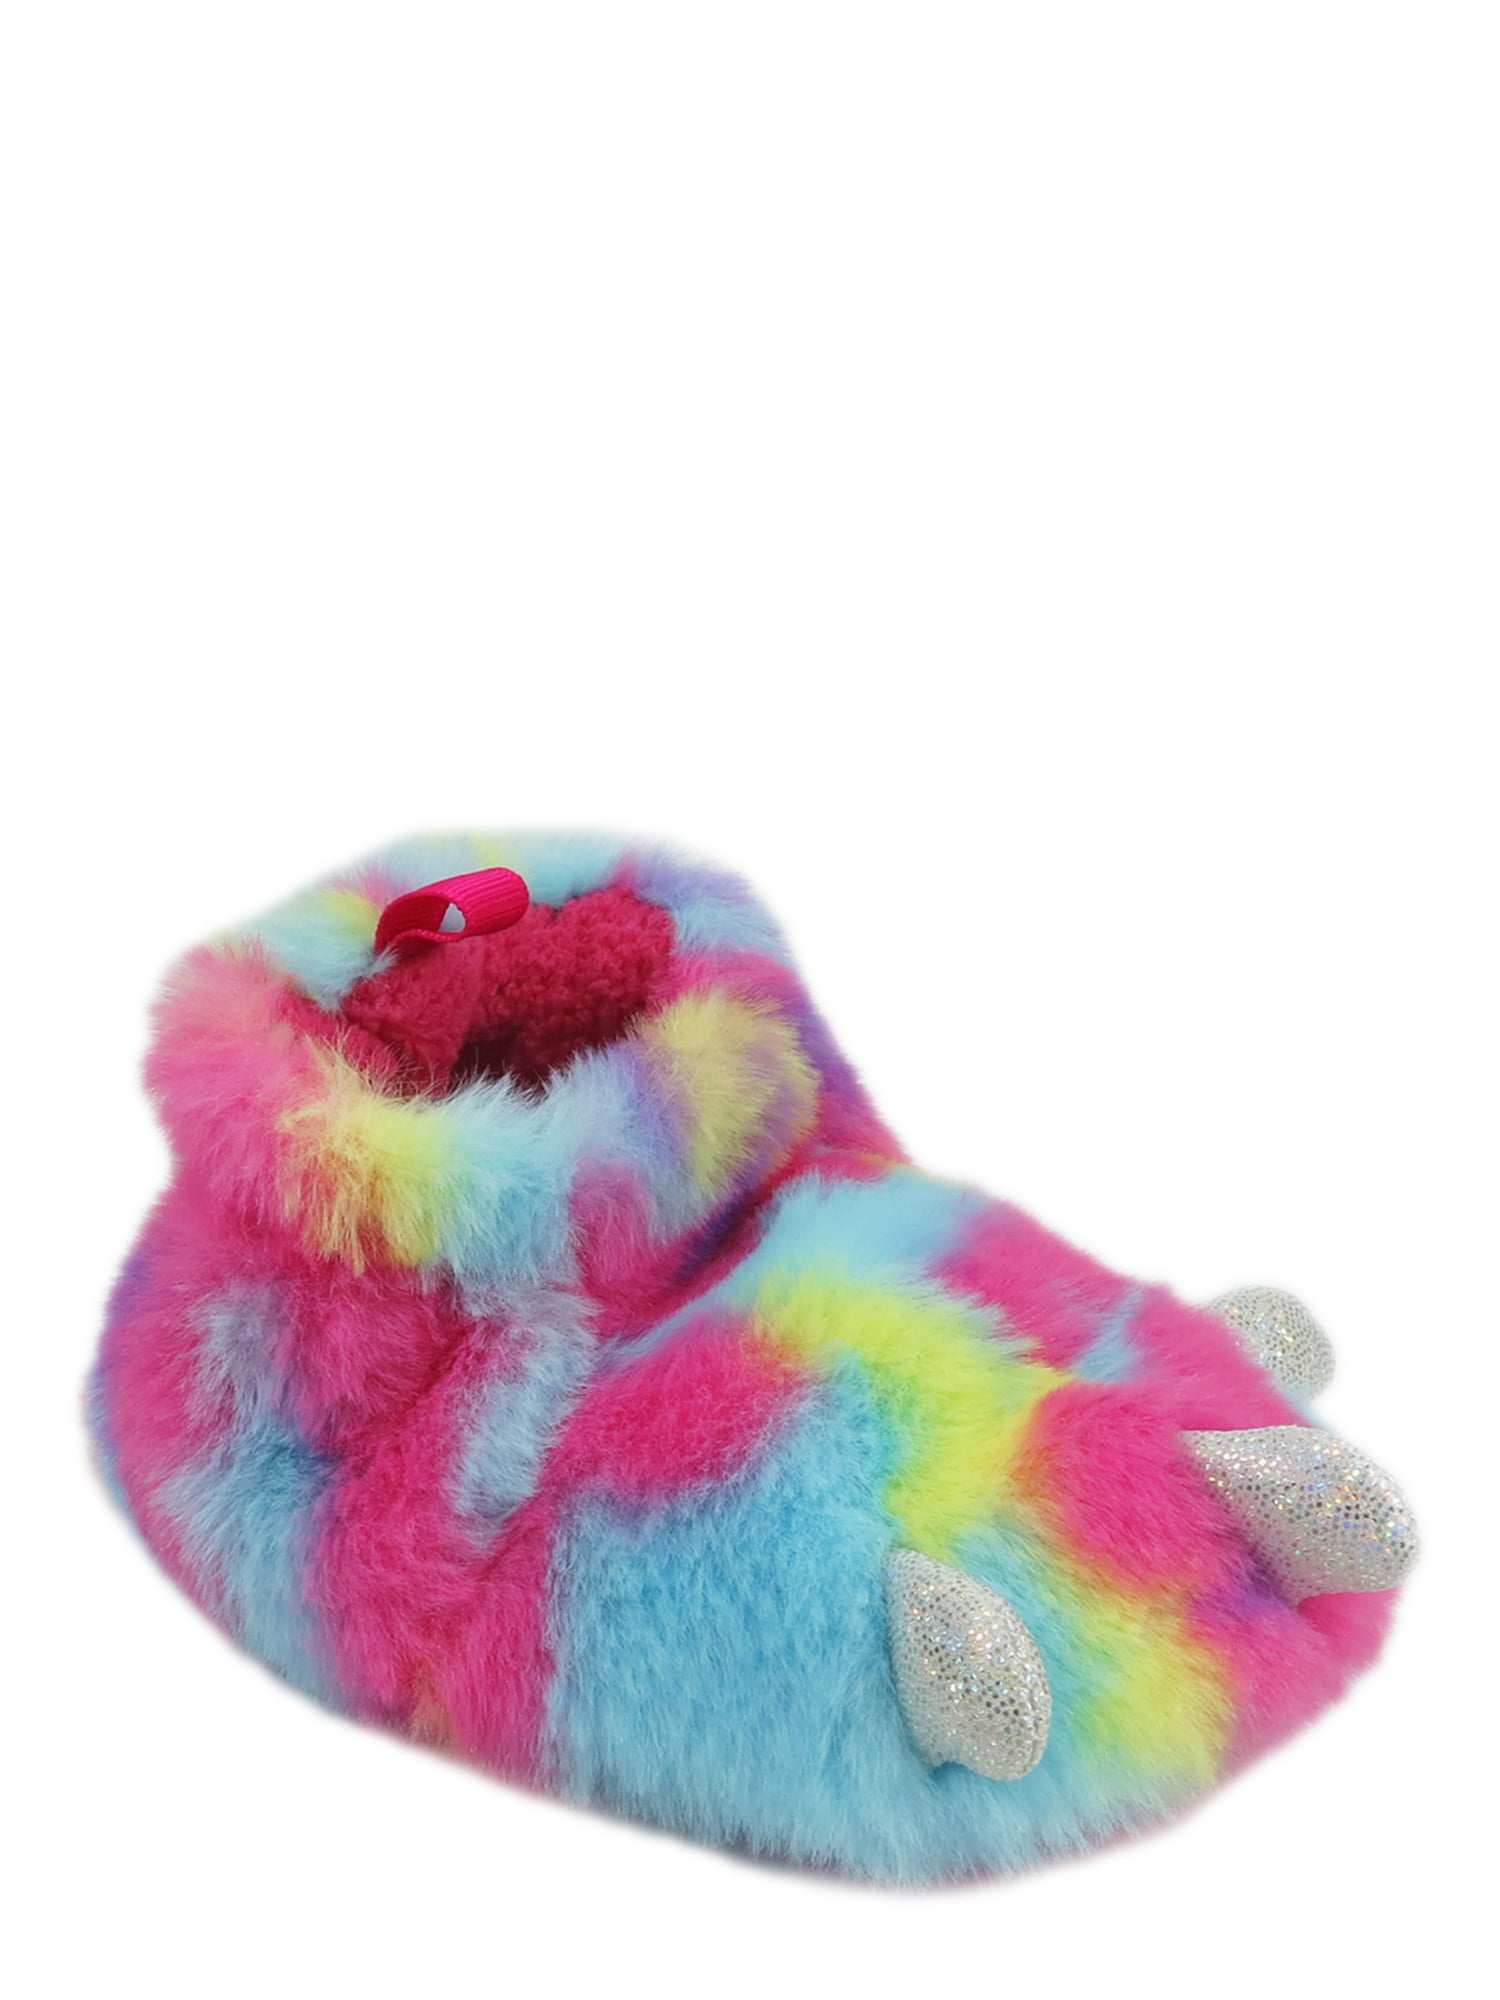 infant fluffy slippers